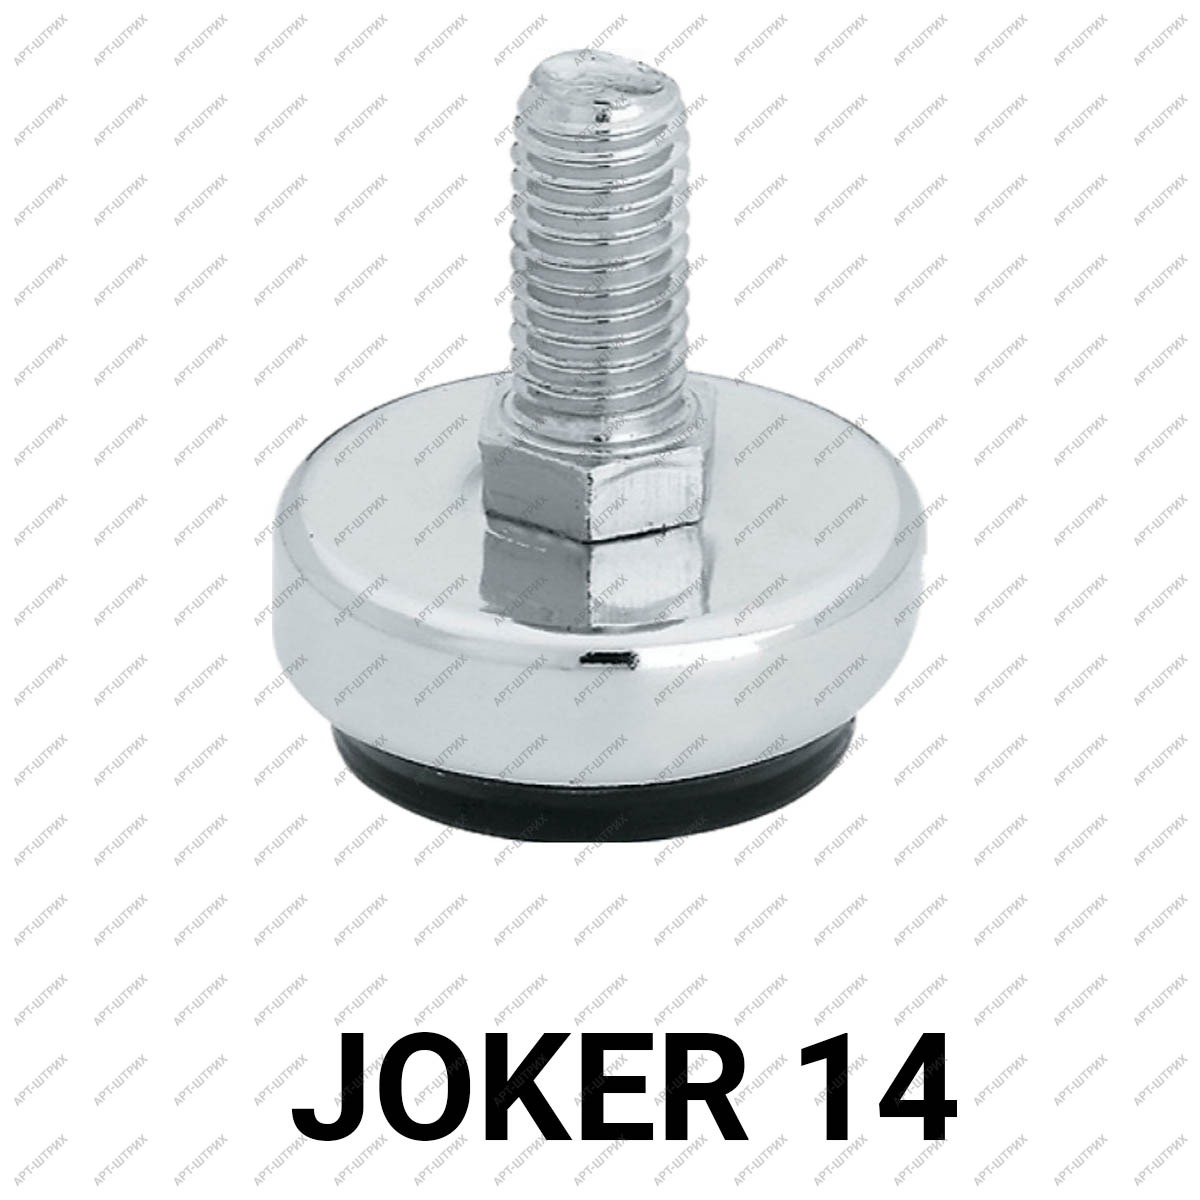 Joker 14 Ножка регулируемая по высоте